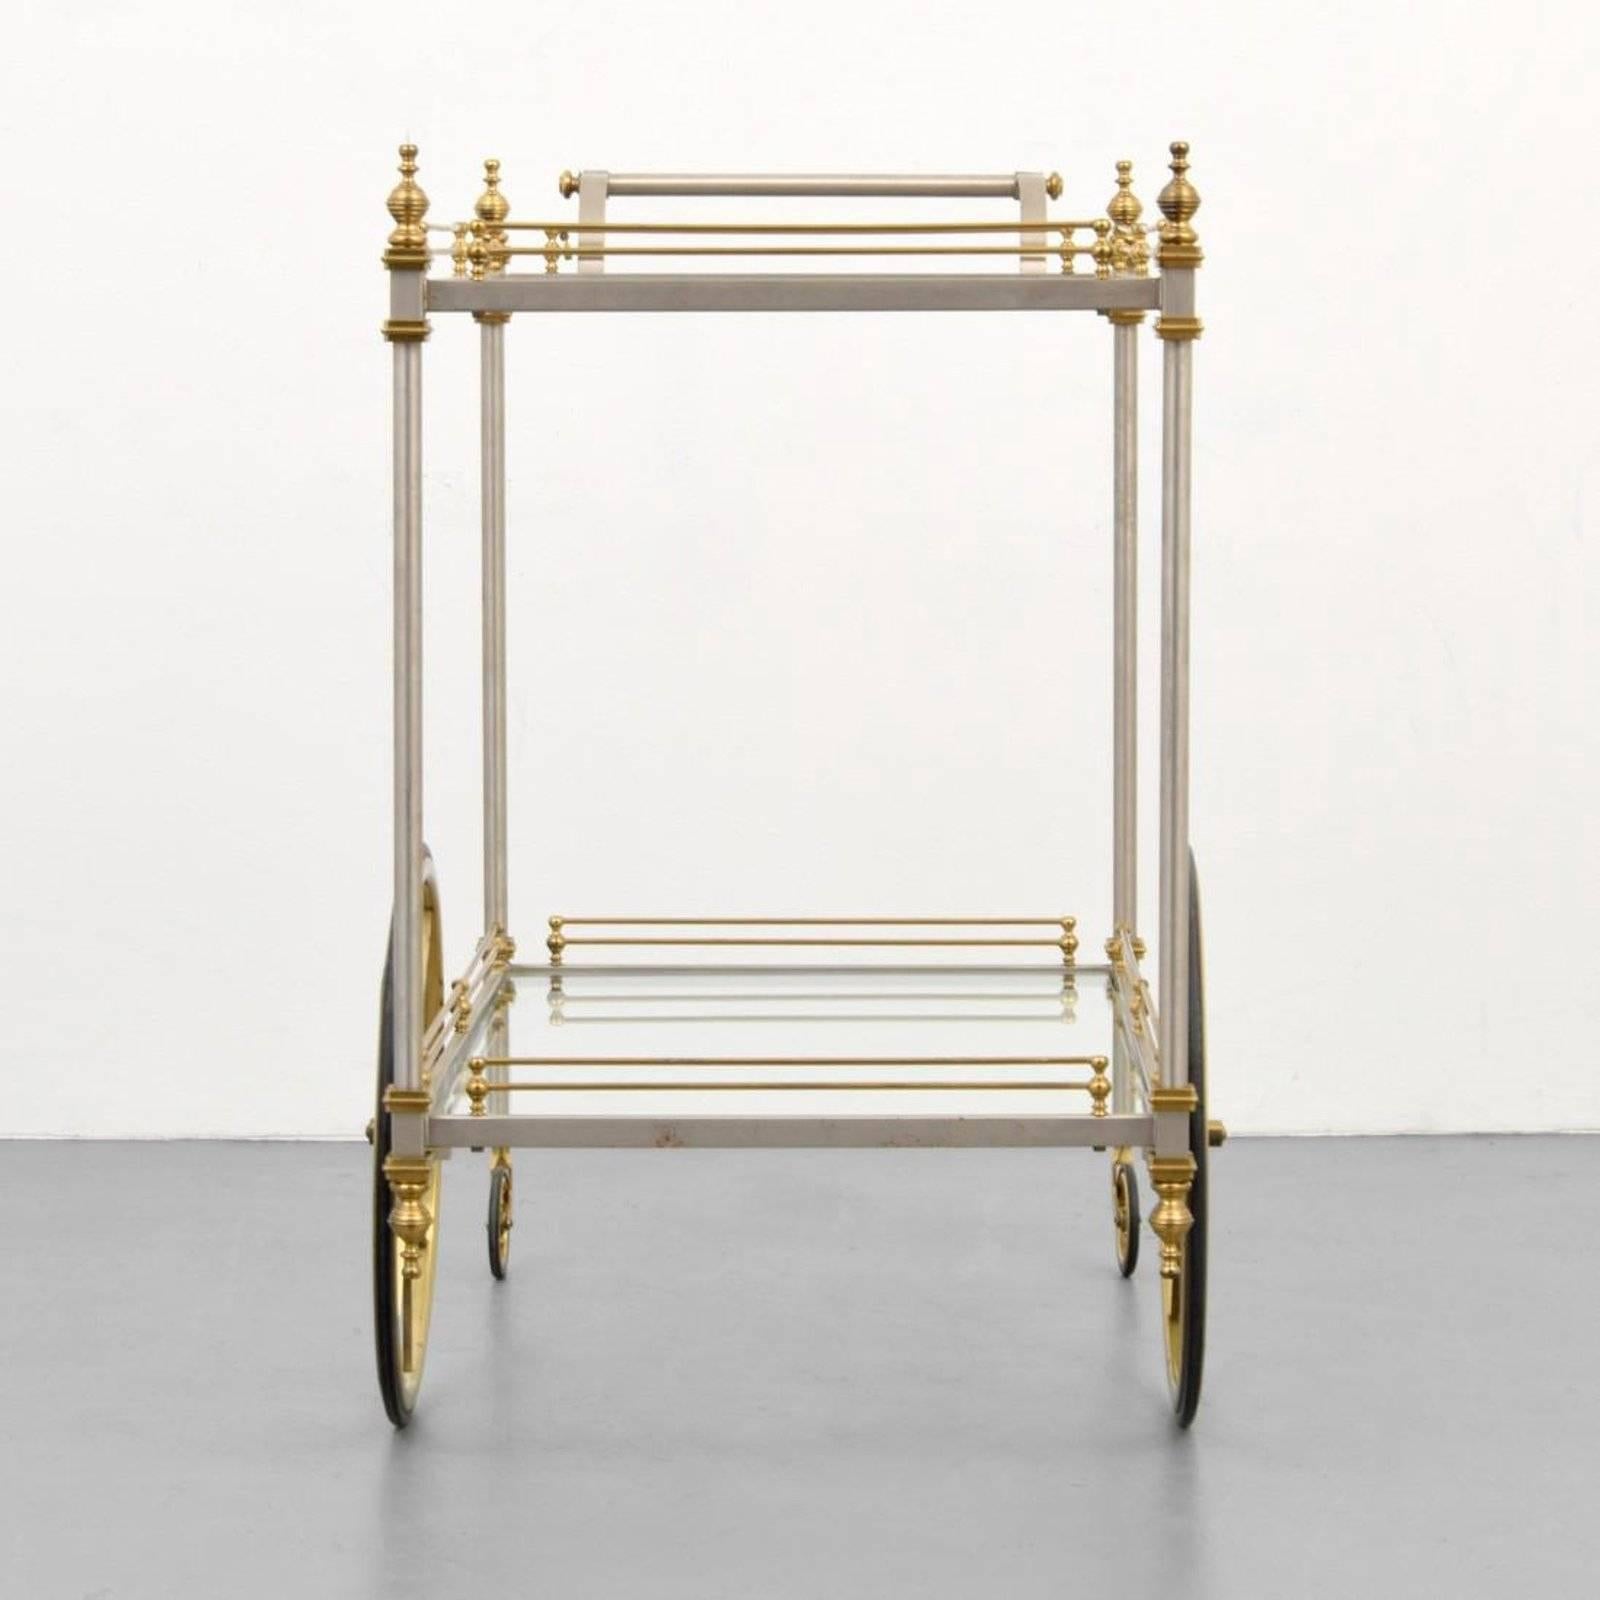 Gorgeous chrome and brass bar/tea cart by Maison Jansen.